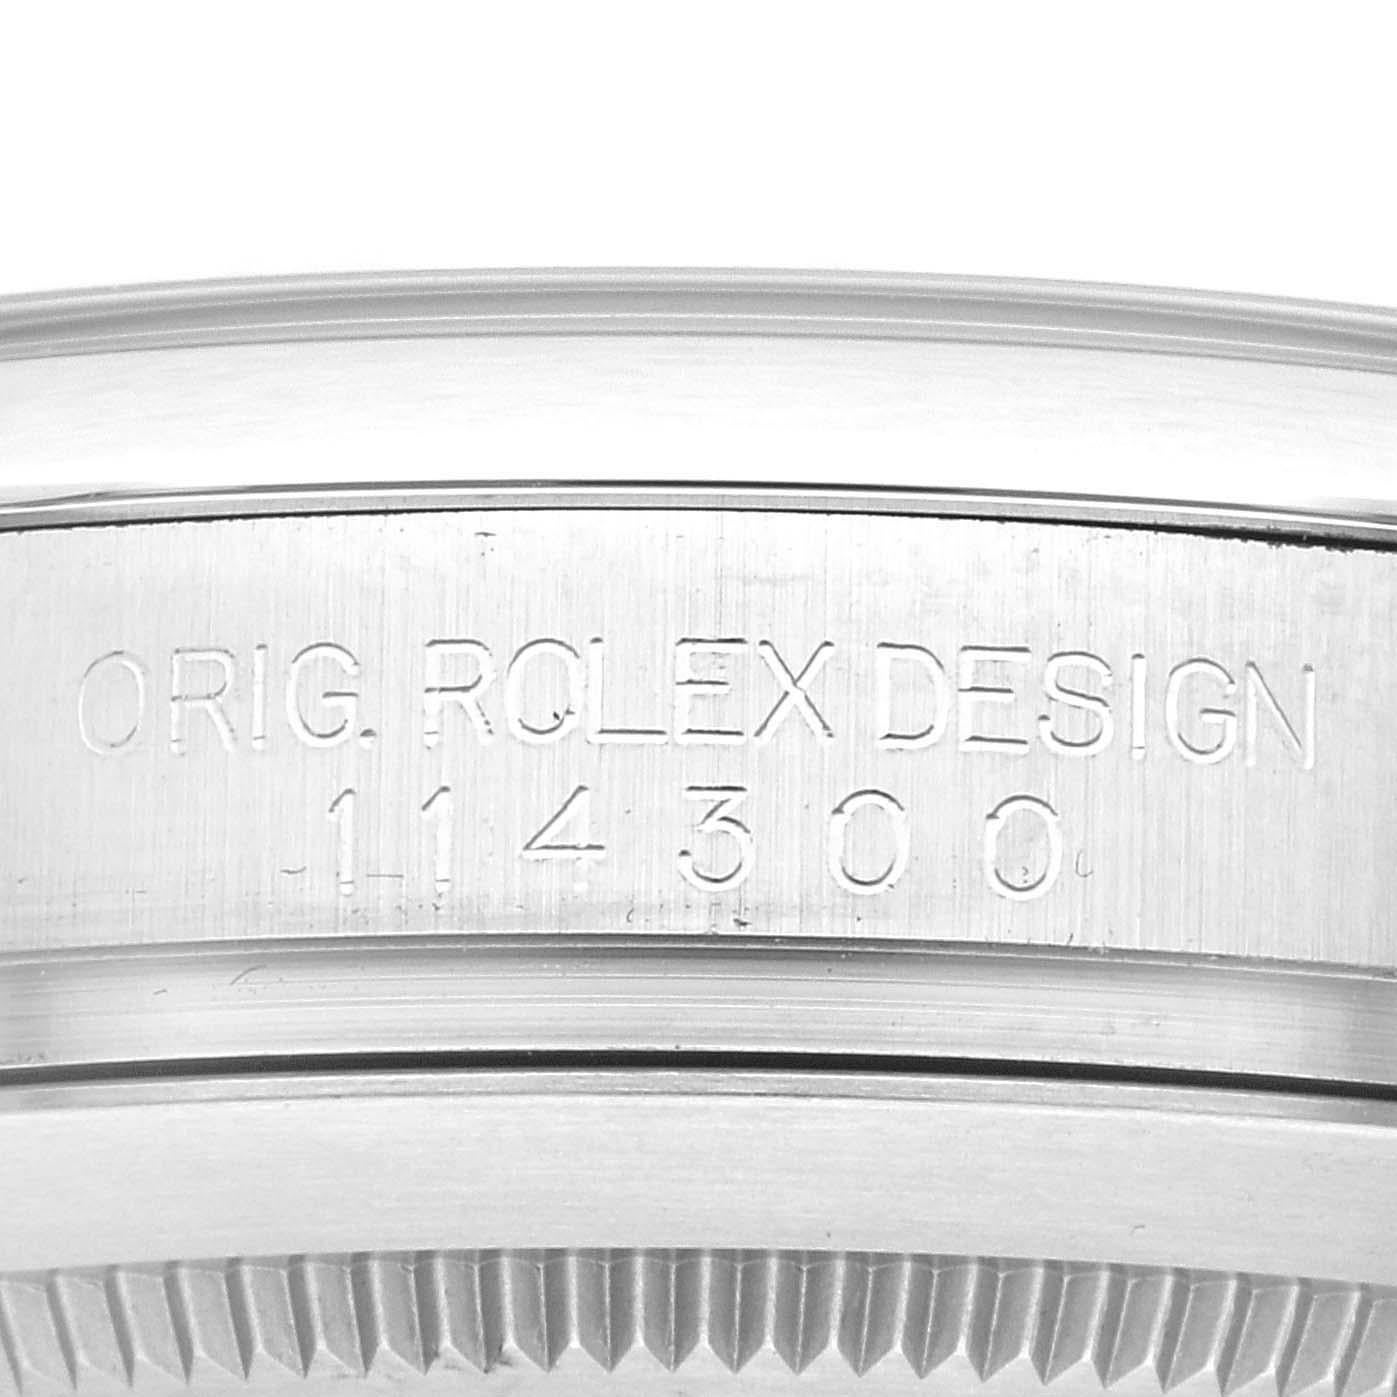 Rolex Oyster Perpetual 39mm Blue Dial Steel Mens Watch 114300 Box Card. Mouvement automatique à remontage automatique, officiellement certifié chronomètre. Boîtier en acier inoxydable de 39 mm de diamètre. Logo Rolex sur une couronne. Lunette bombée